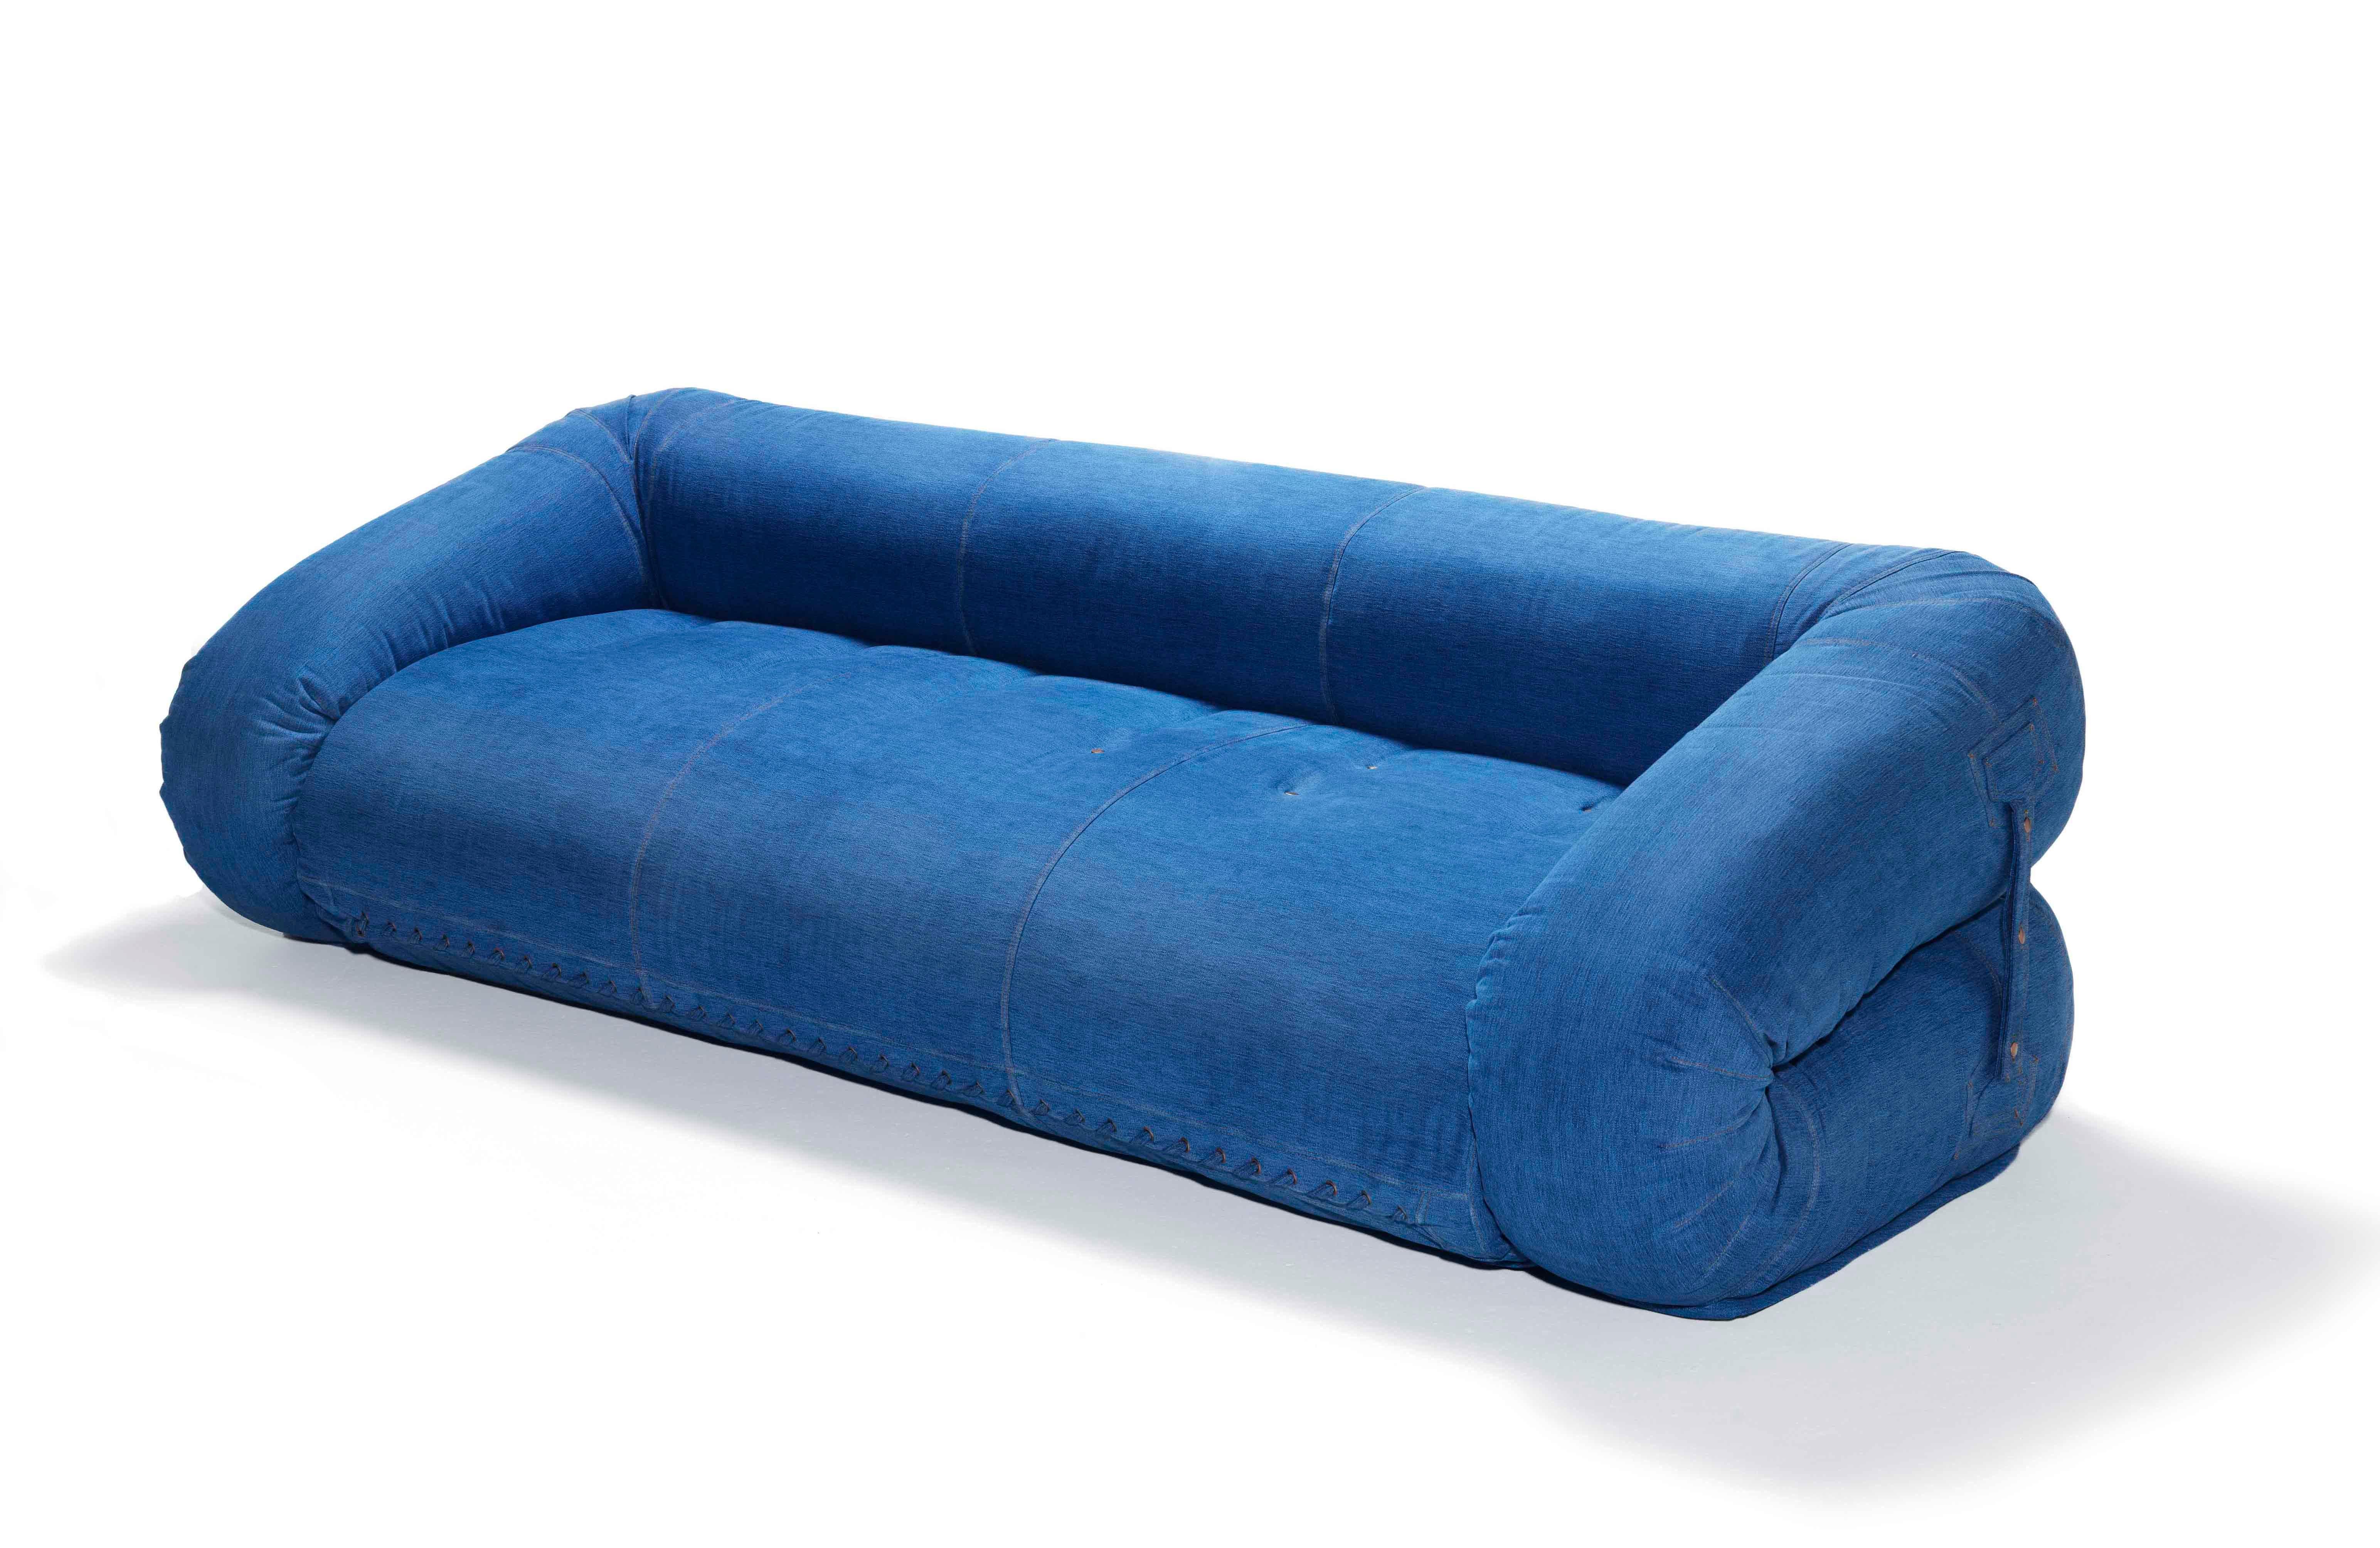 Le canapé-lit, conçu par Alessandro Becchi en collaboration avec l'équipe Giovannetti, a récemment fêté ses 50 ans.
Son histoire est riche d'événements et de participations importants. Une pièce considérée comme un 